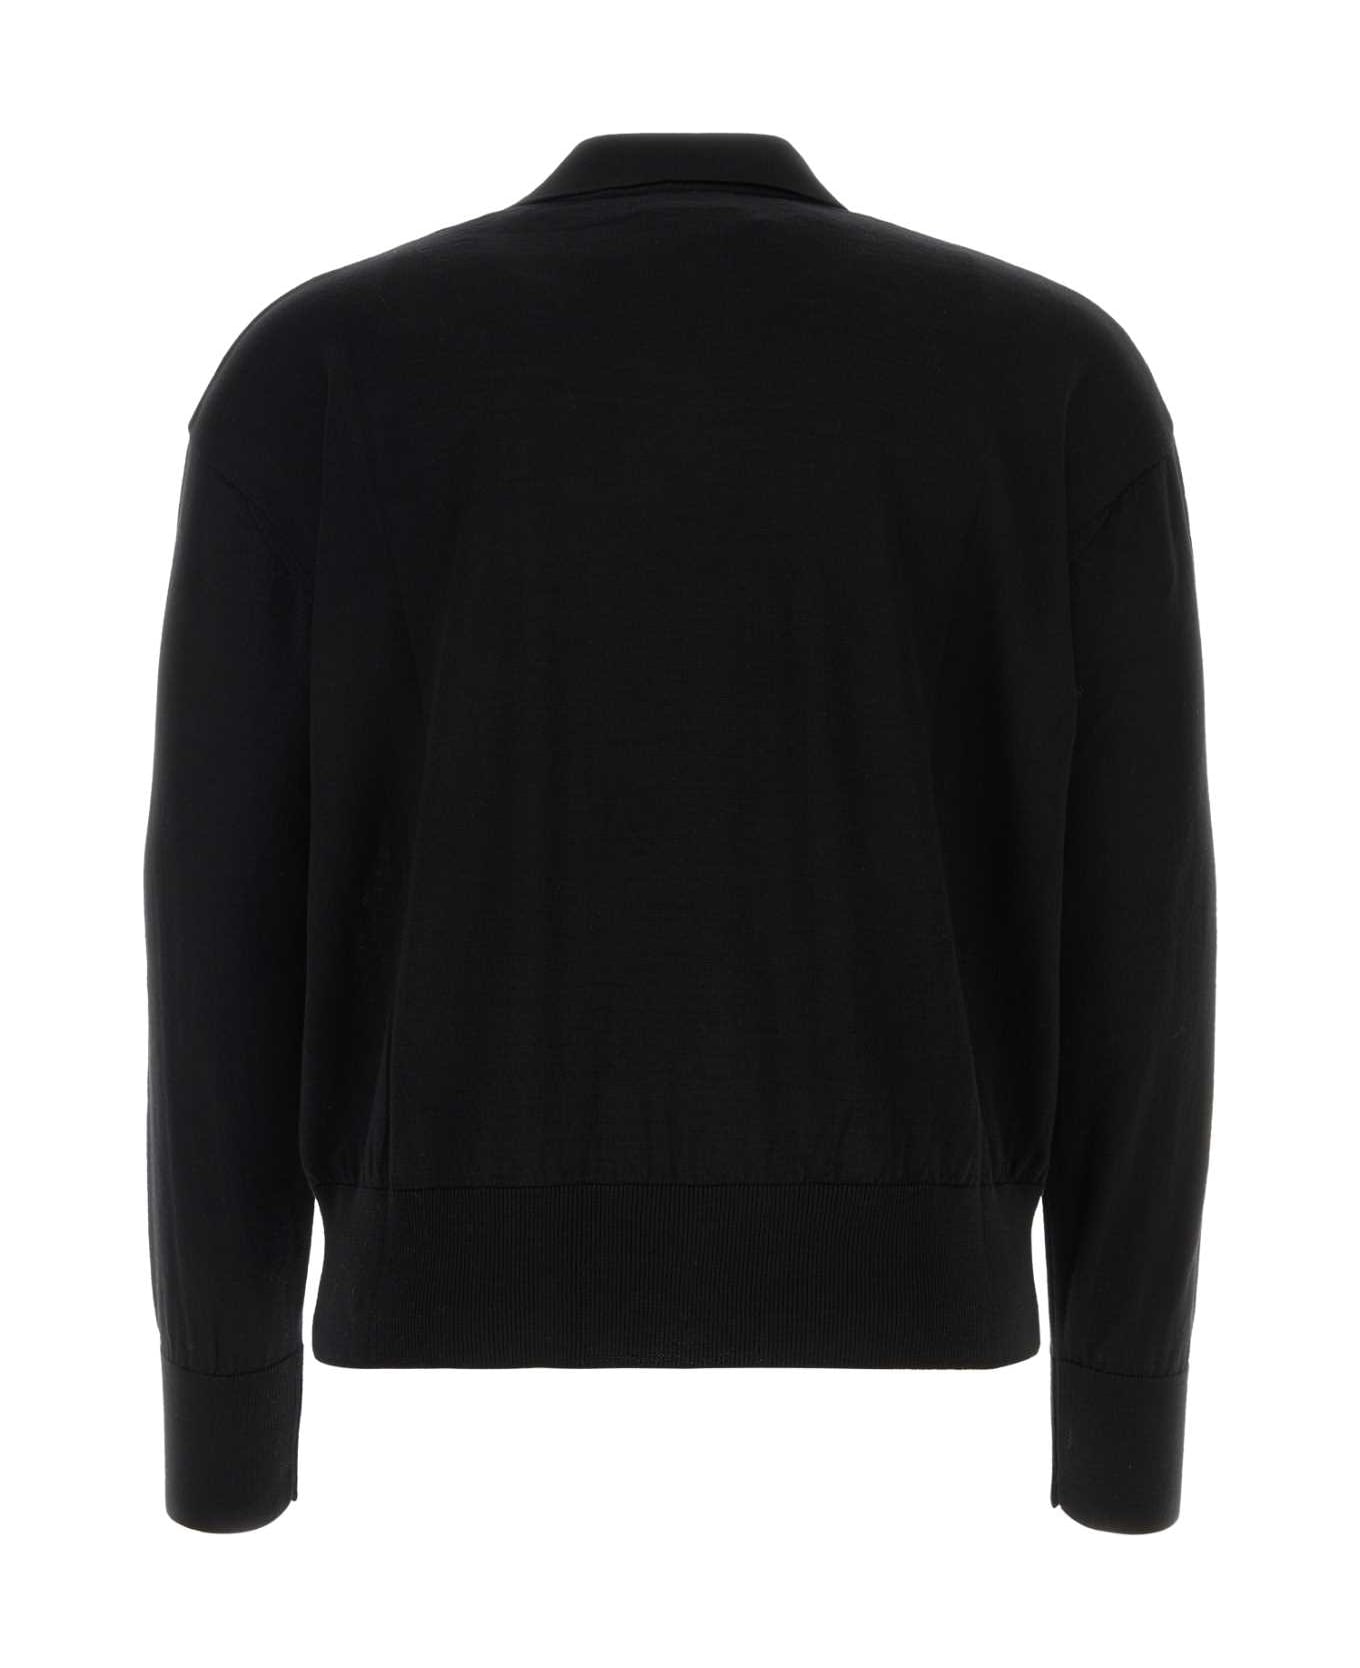 Ami Alexandre Mattiussi Black Wool Sweater - Black